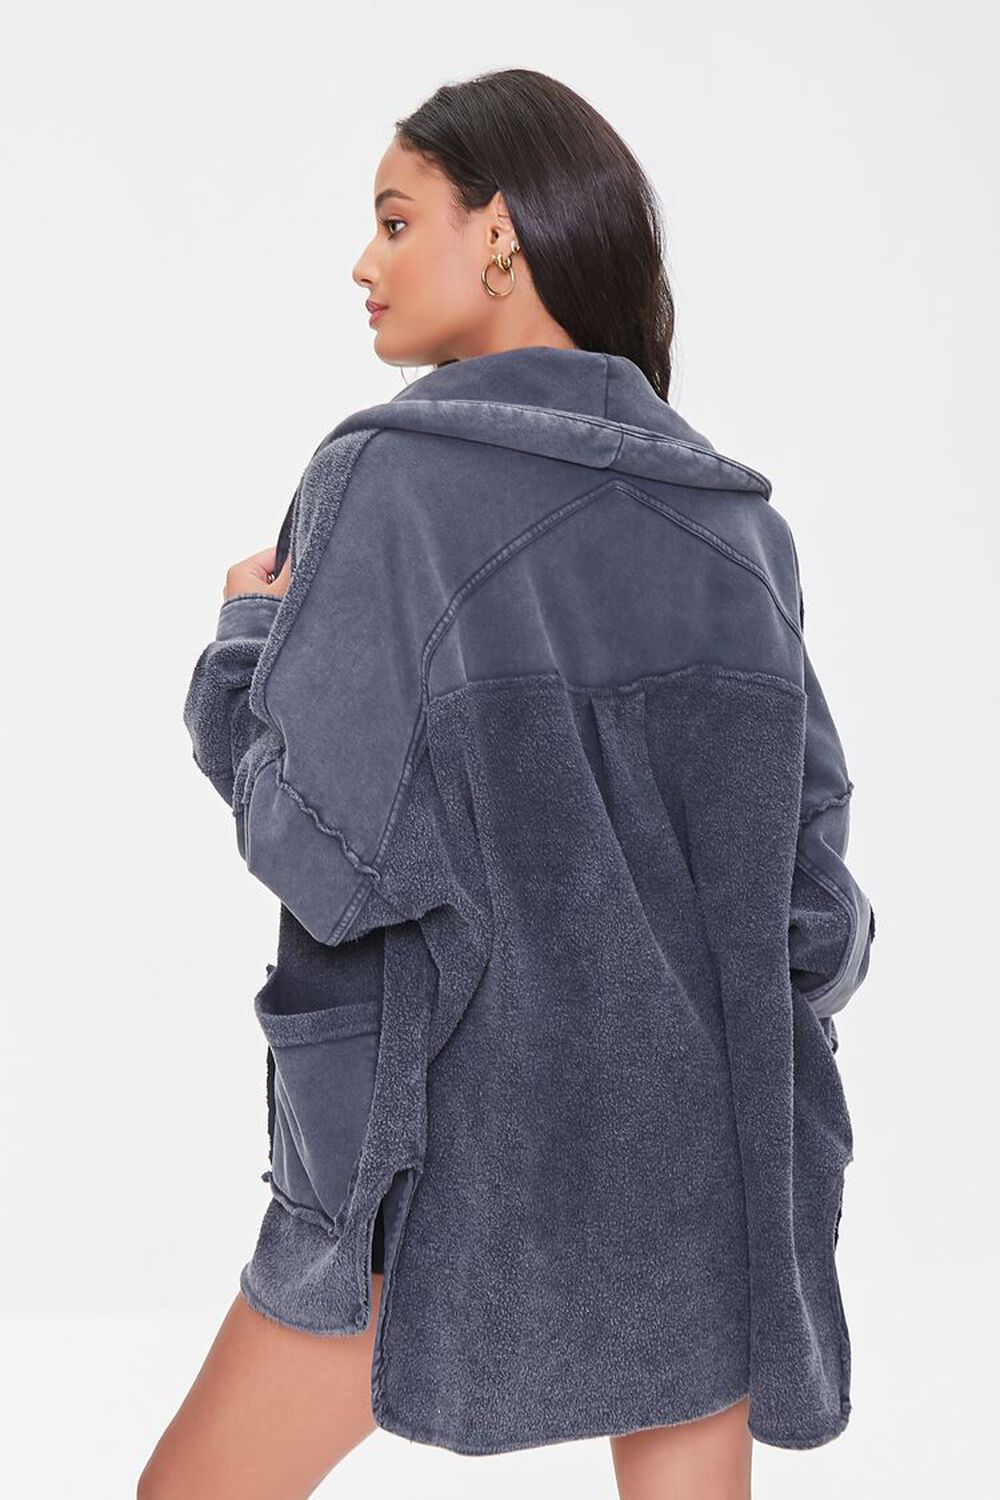 CHARCOAL Reverse Fleece Cardigan, image 3